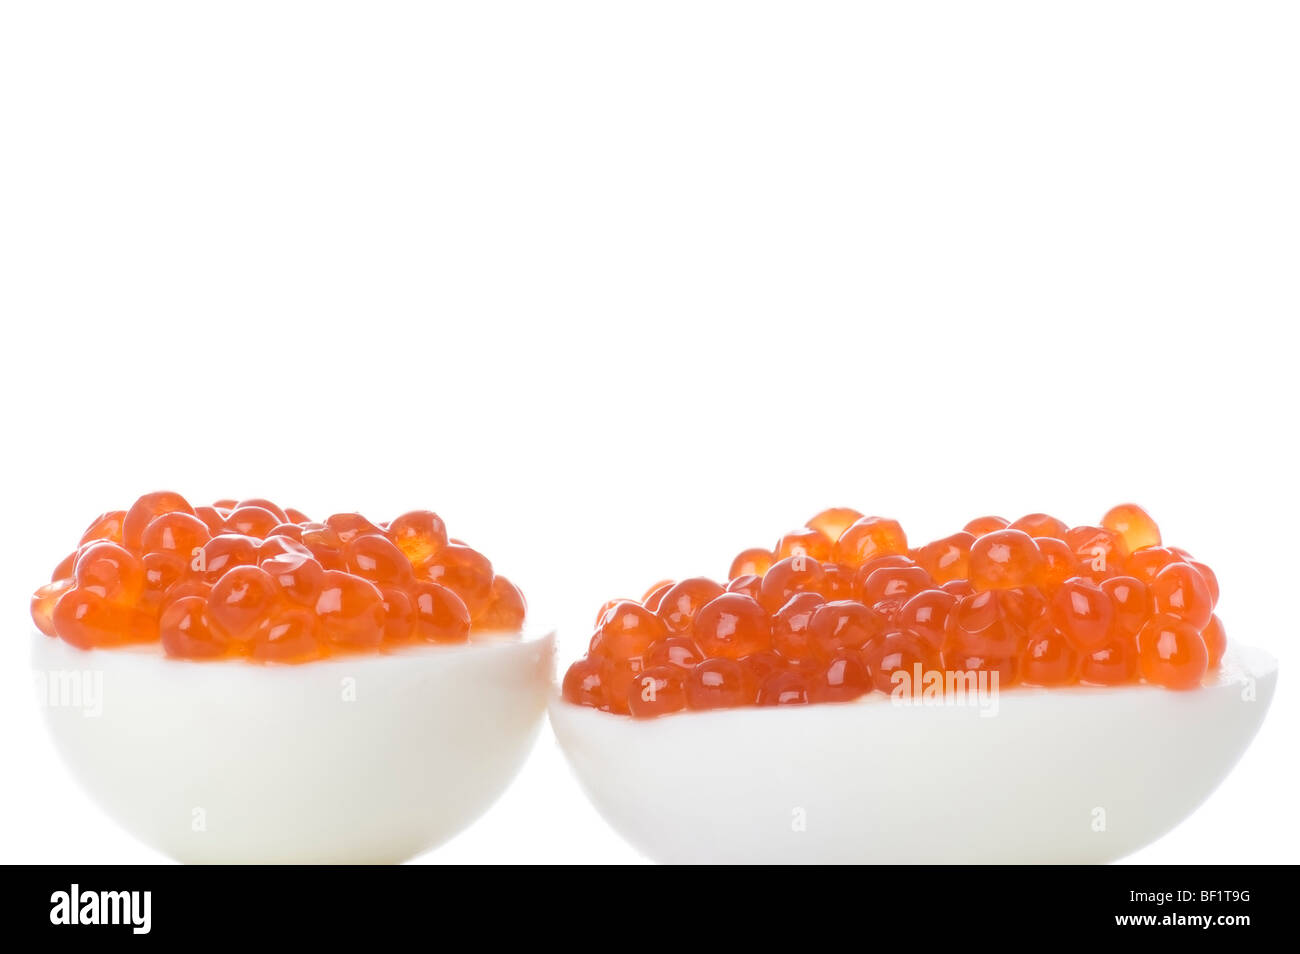 Objekt auf weiß - rotem Kaviar auf ei Stockfoto